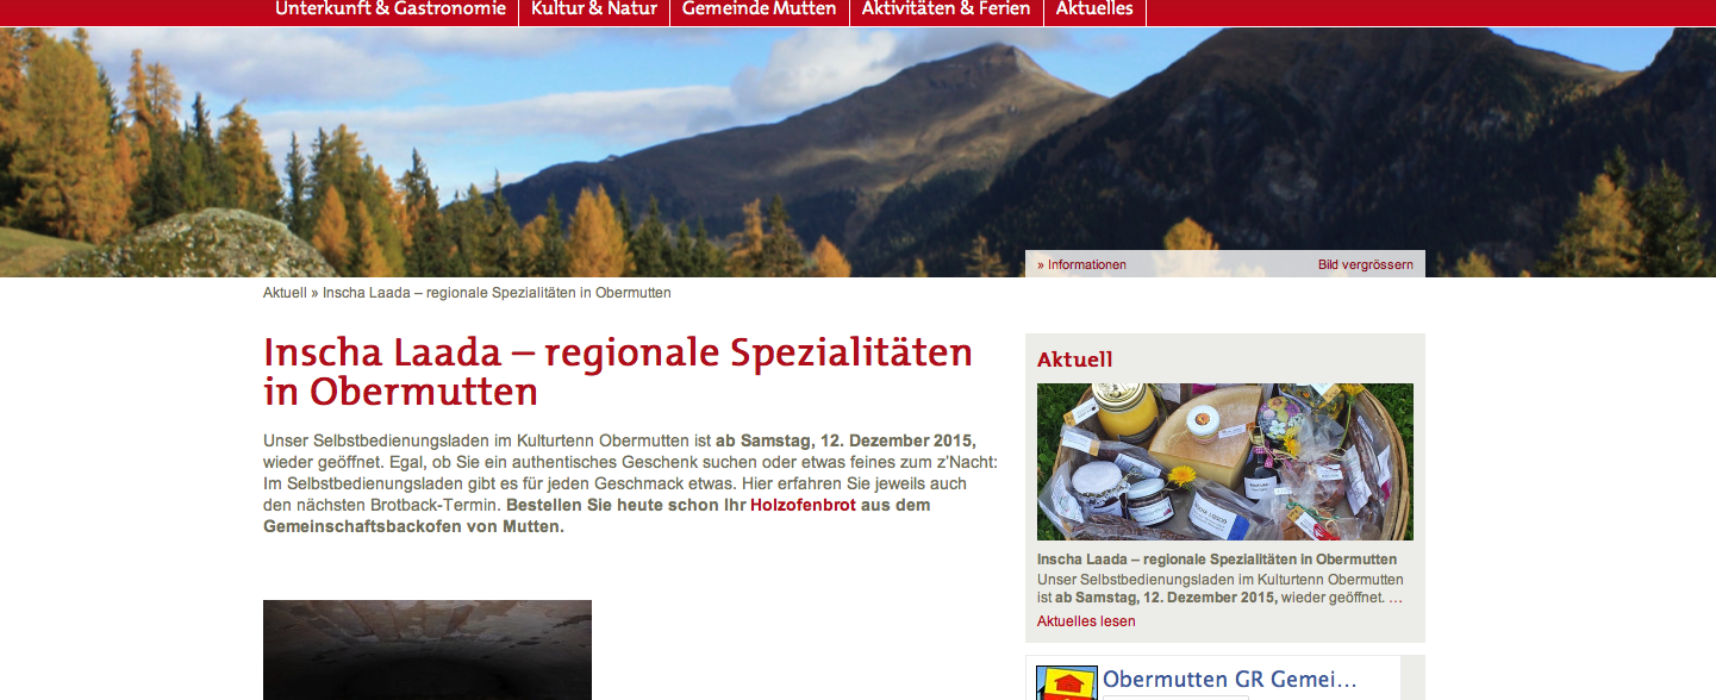 Sils: Wasseruntersuchungsbericht über den Kanton Graubünden